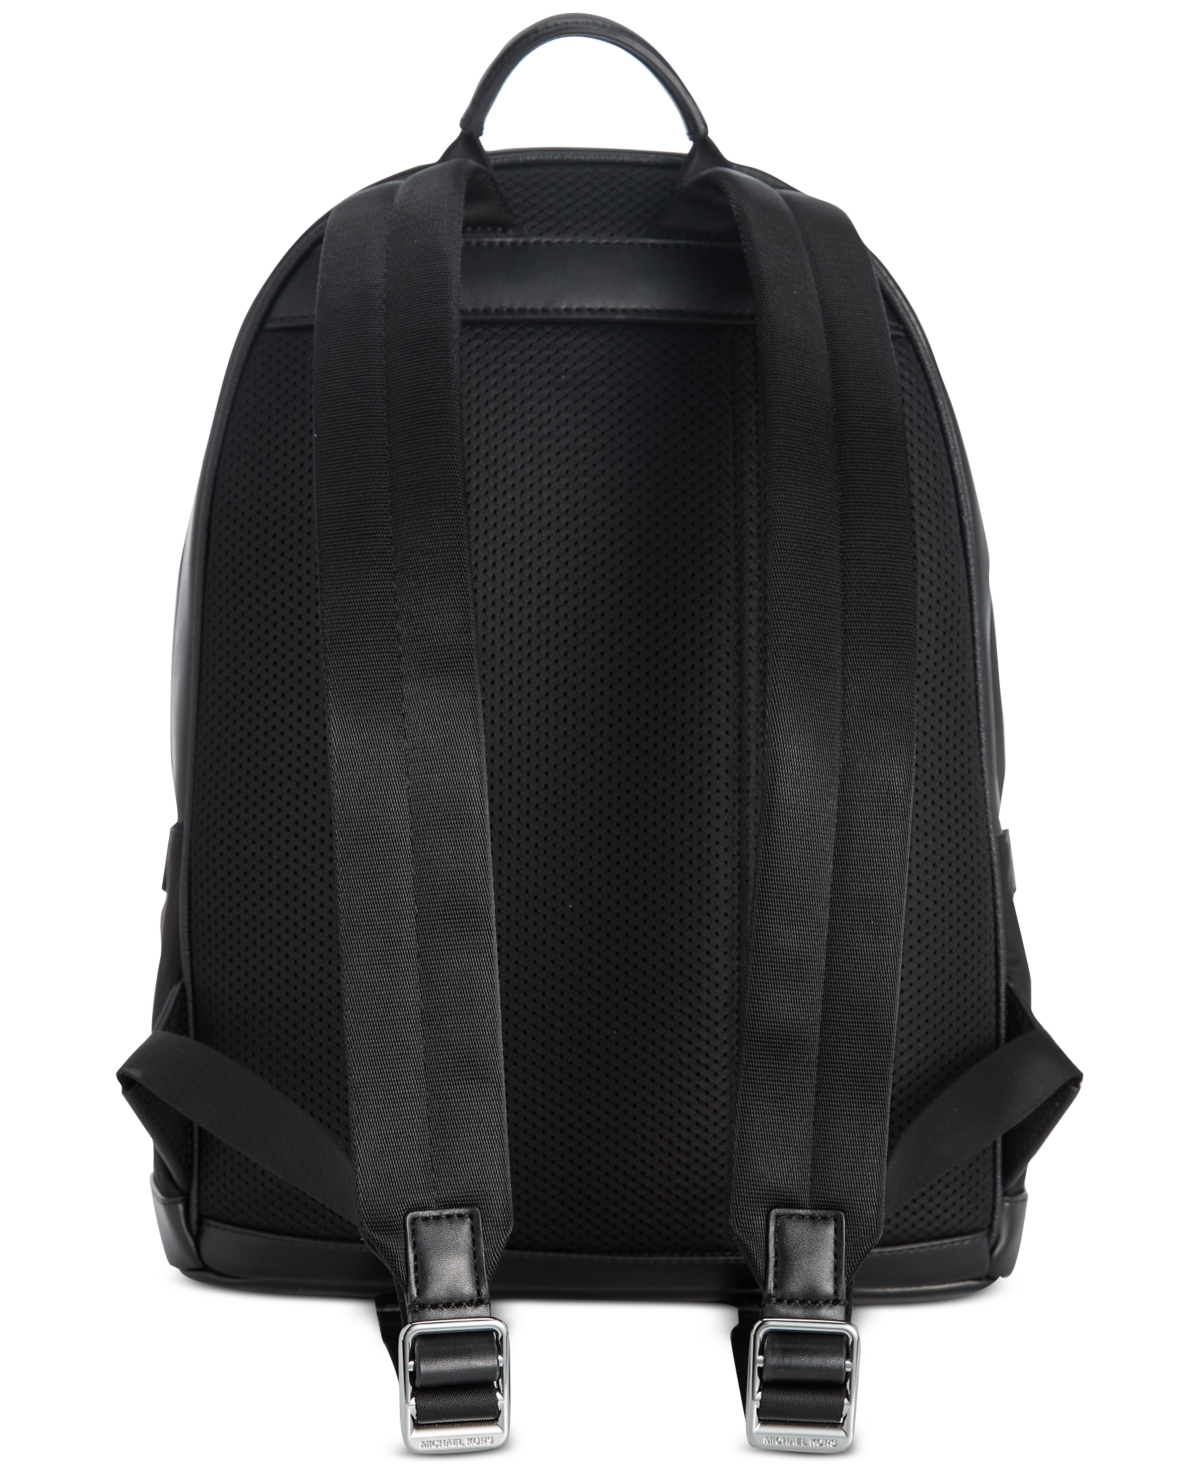 Michael Kors Men'S Mason Explorer Leather Backpack for Men